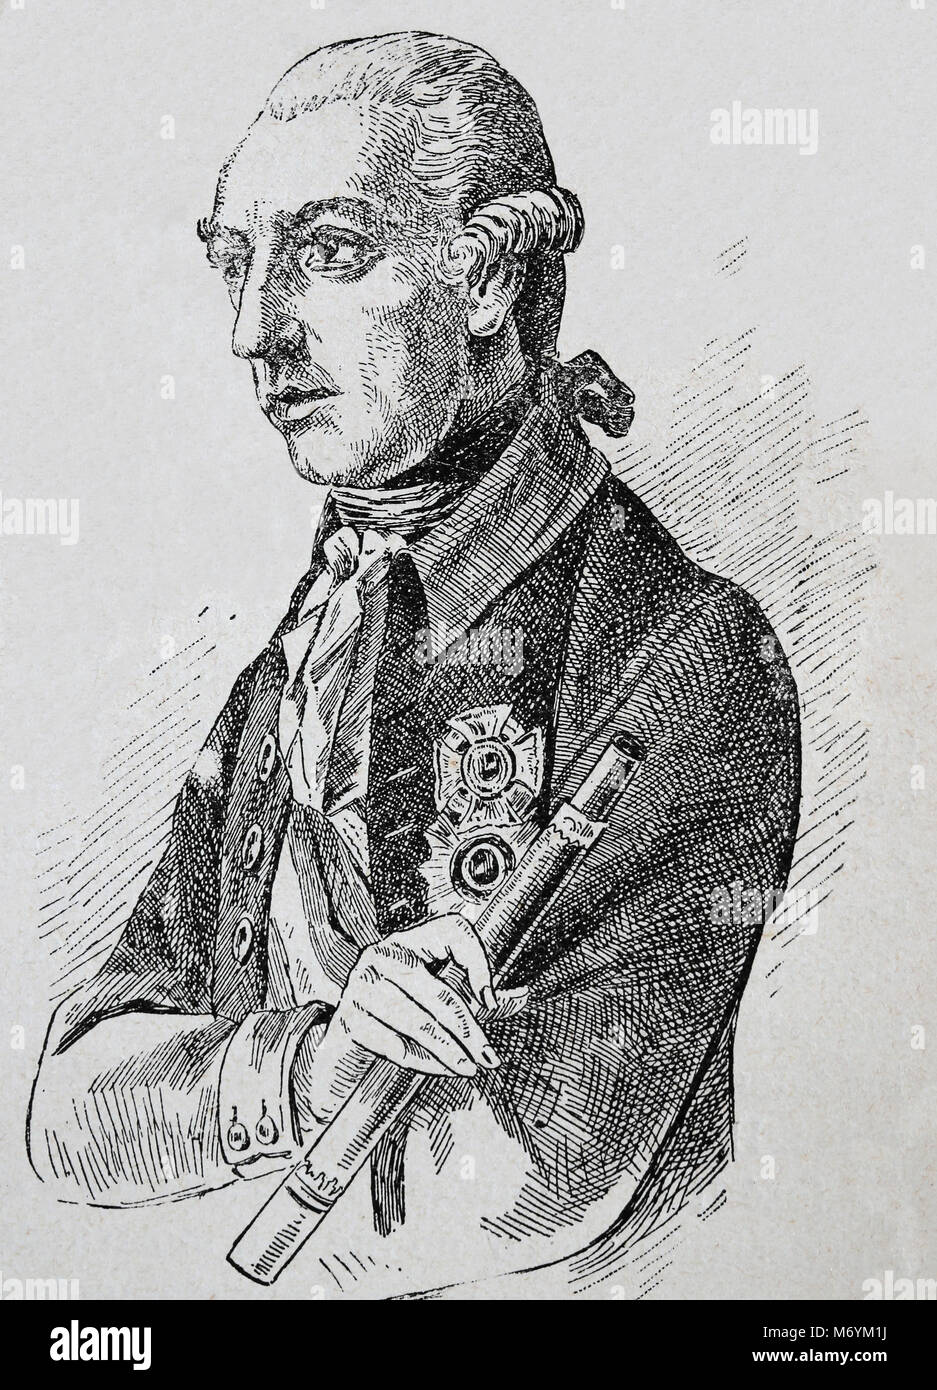 Joseph II. (1741-1790). Kaiser des Heiligen Römischen Reiches von 1764-1790. Porträt. Gravur. Stockfoto